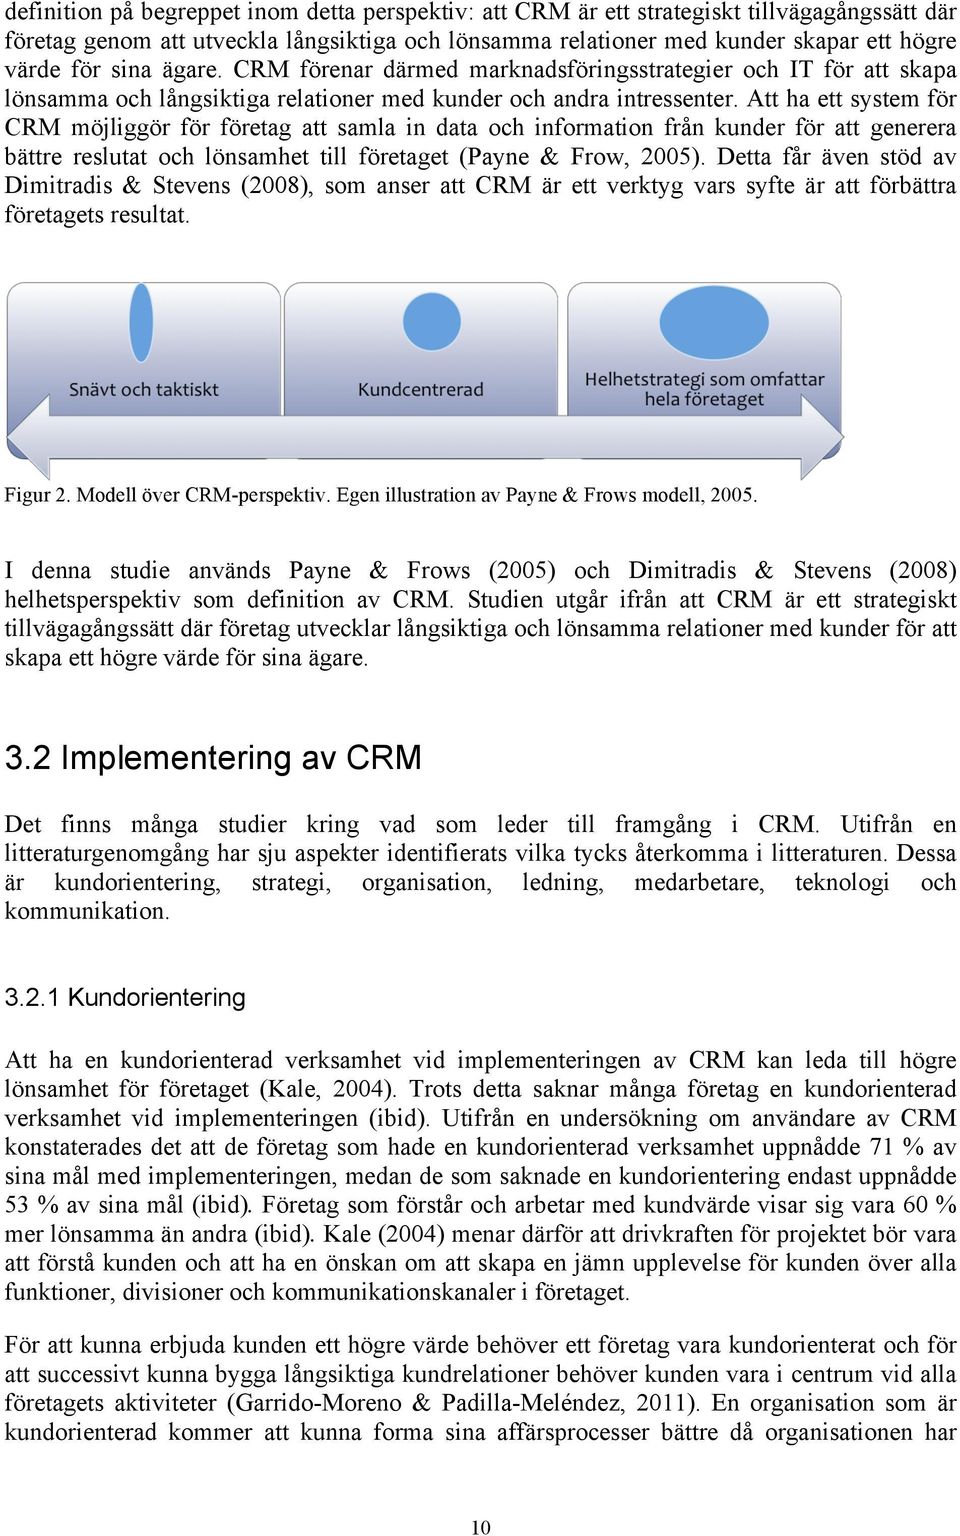 Att ha ett system för CRM möjliggör för företag att samla in data och information från kunder för att generera bättre reslutat och lönsamhet till företaget (Payne & Frow, 2005).